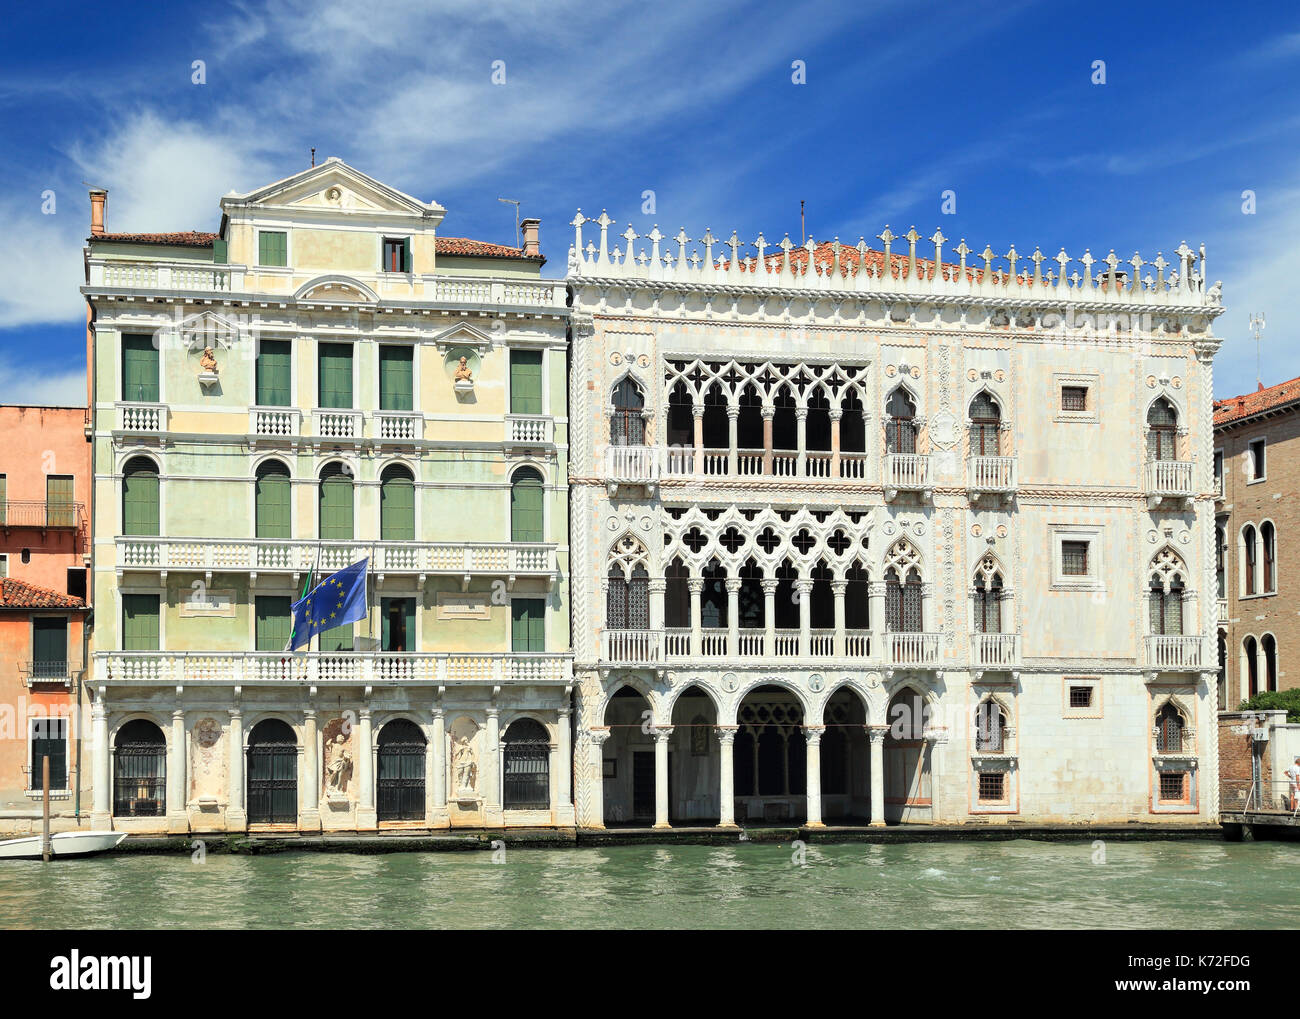 Palazzo Miani Coletti Giusti und Palazzo Ca' d'Oro, Canale Grande, Venedig Stockfoto